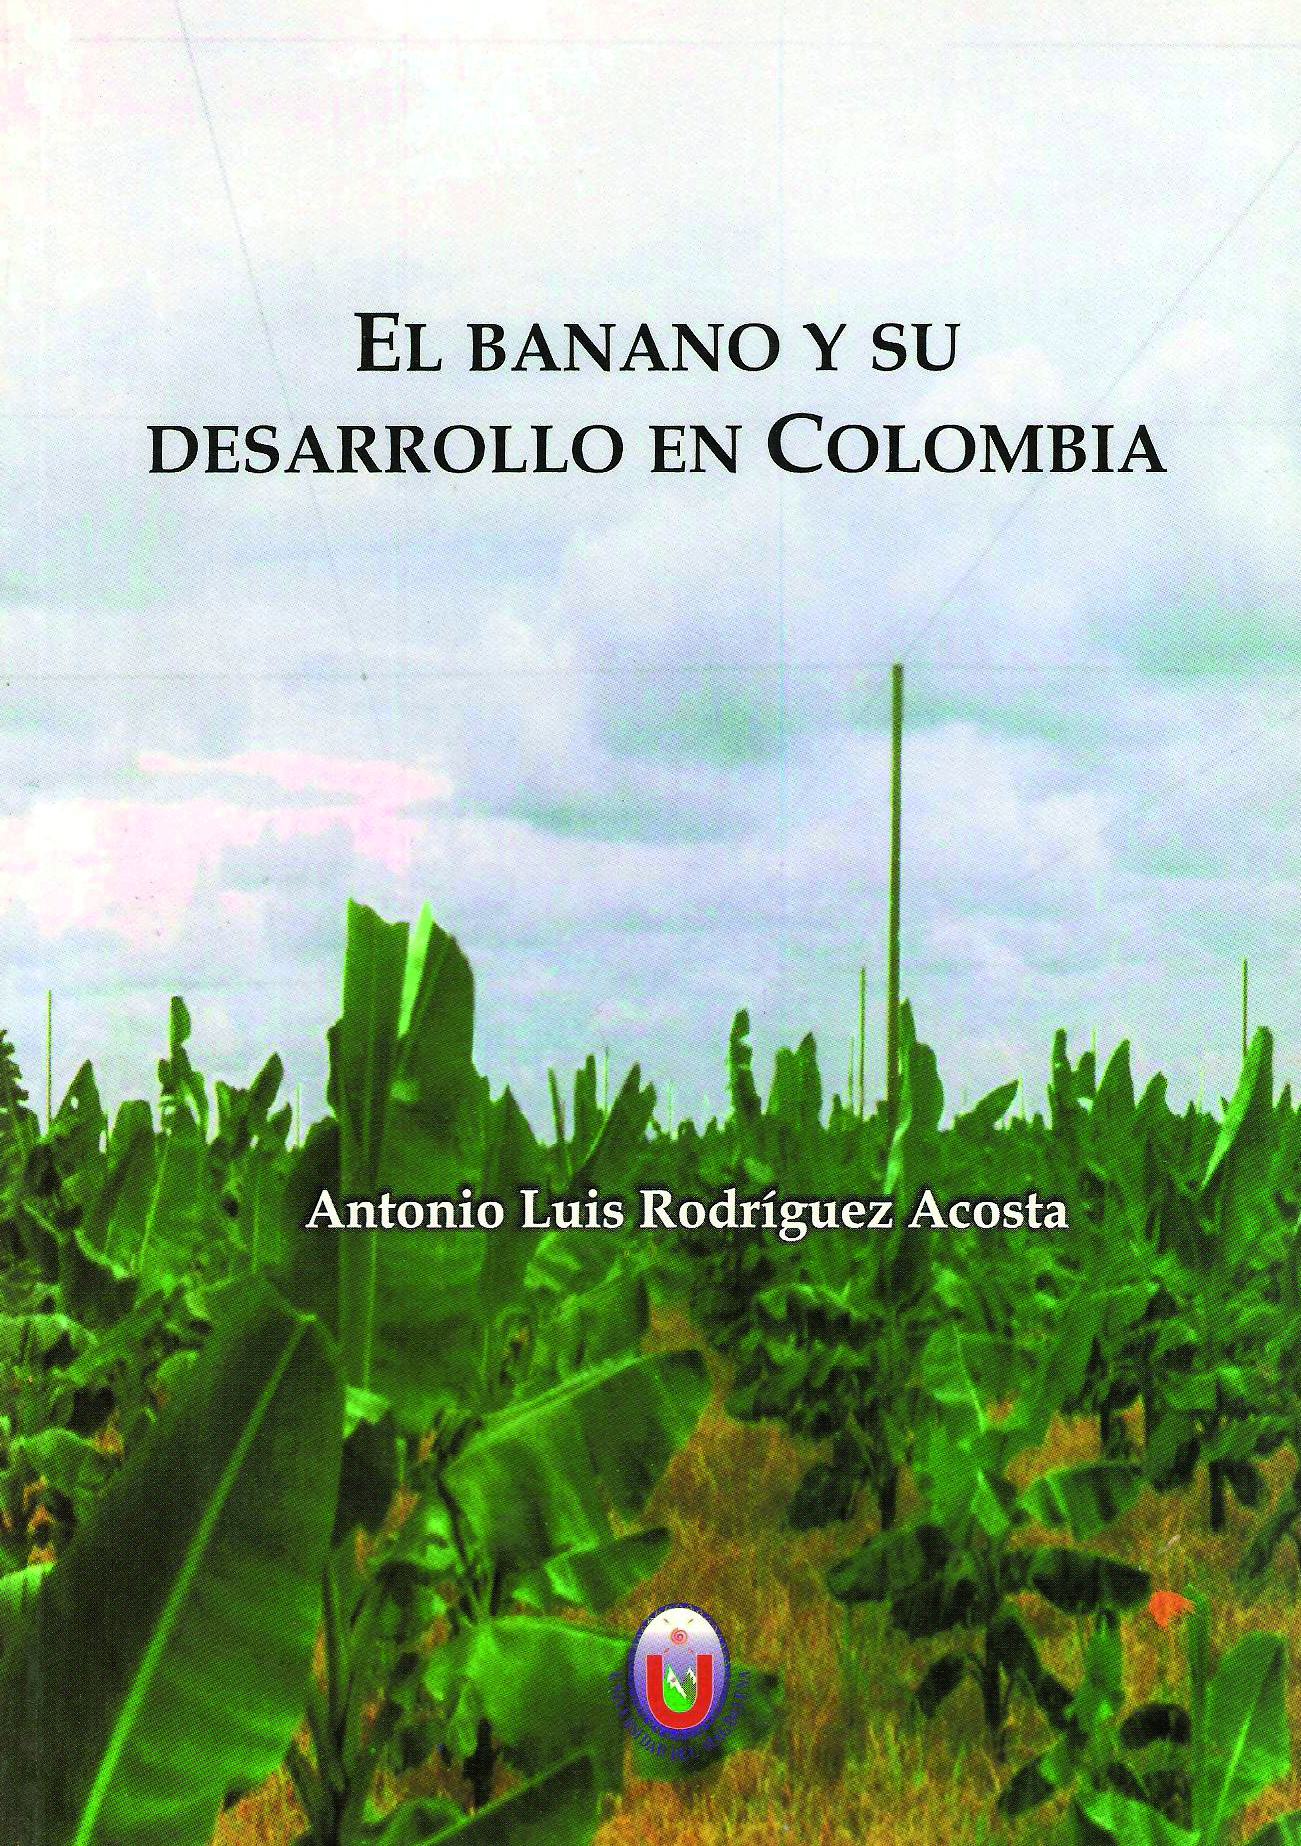 El Banano y su desarrollo en Colombia